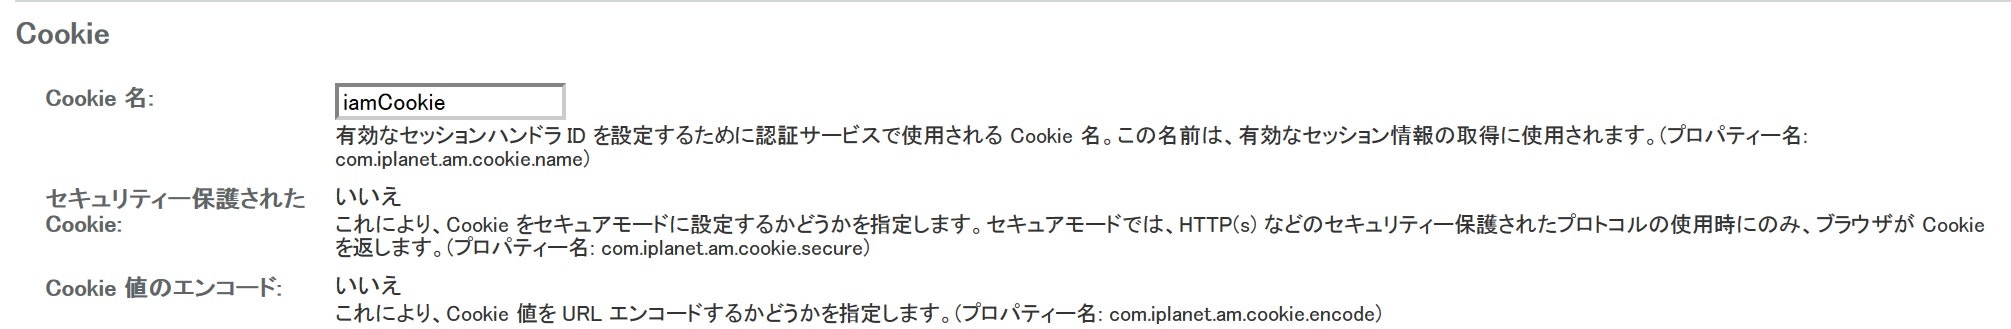 update_cookie_config.jpg